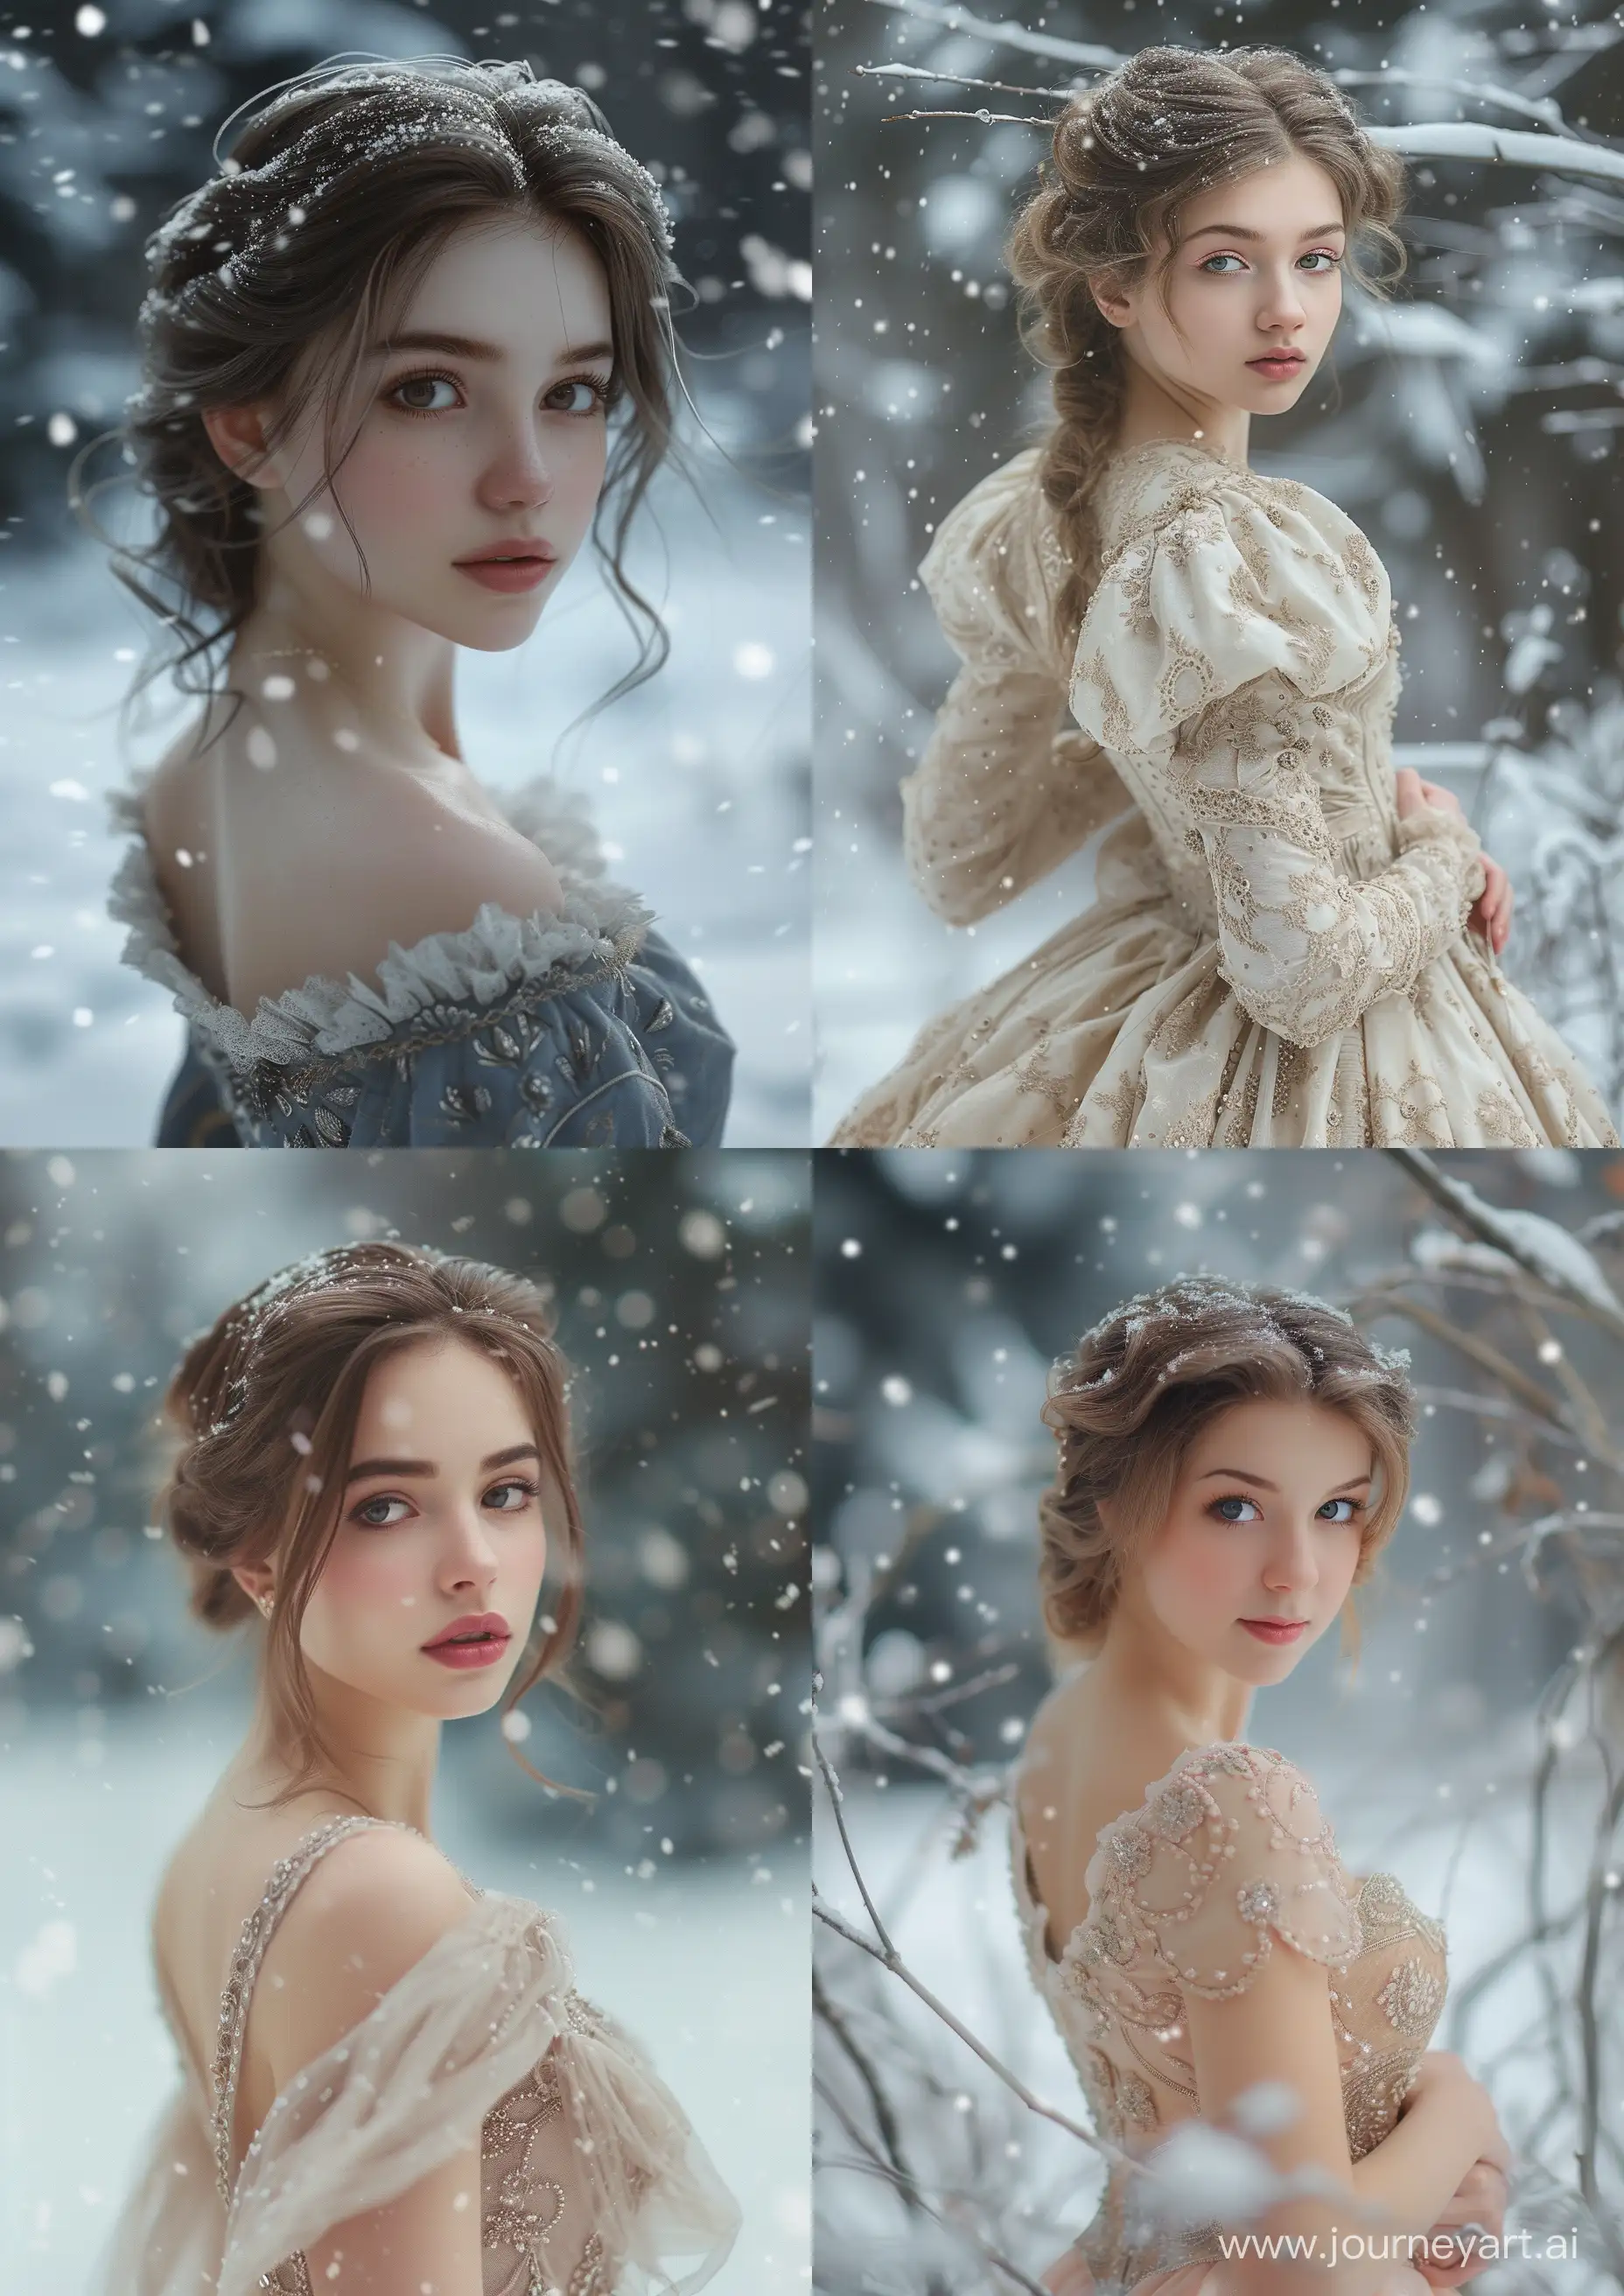 Красивая девушка в платье из зимы, 38 лет, январь, вокруг снег, фоторевлизм, --ar 5:7